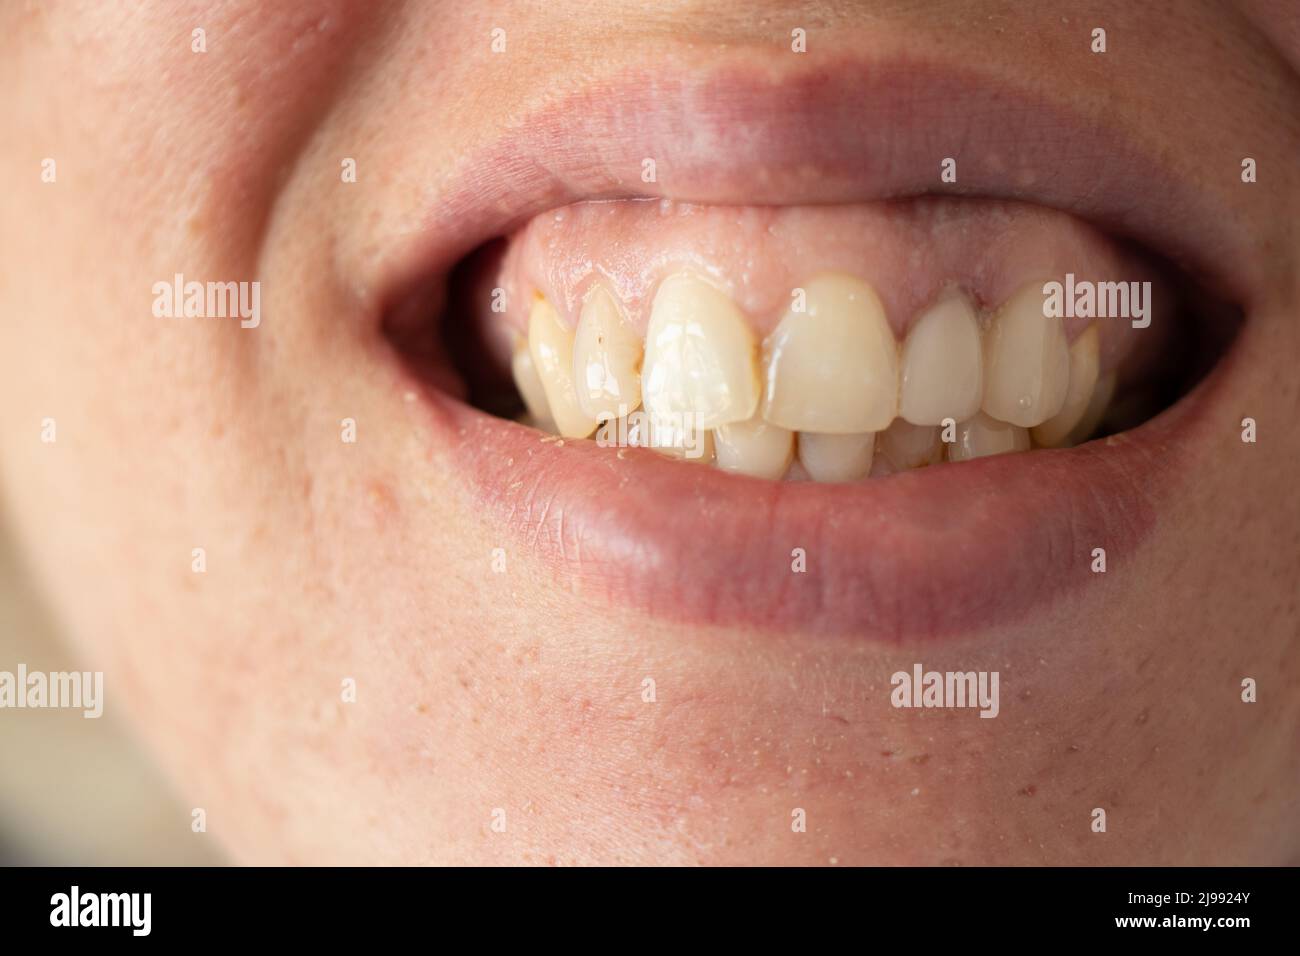 Denti gialli storti immagini e fotografie stock ad alta risoluzione - Alamy